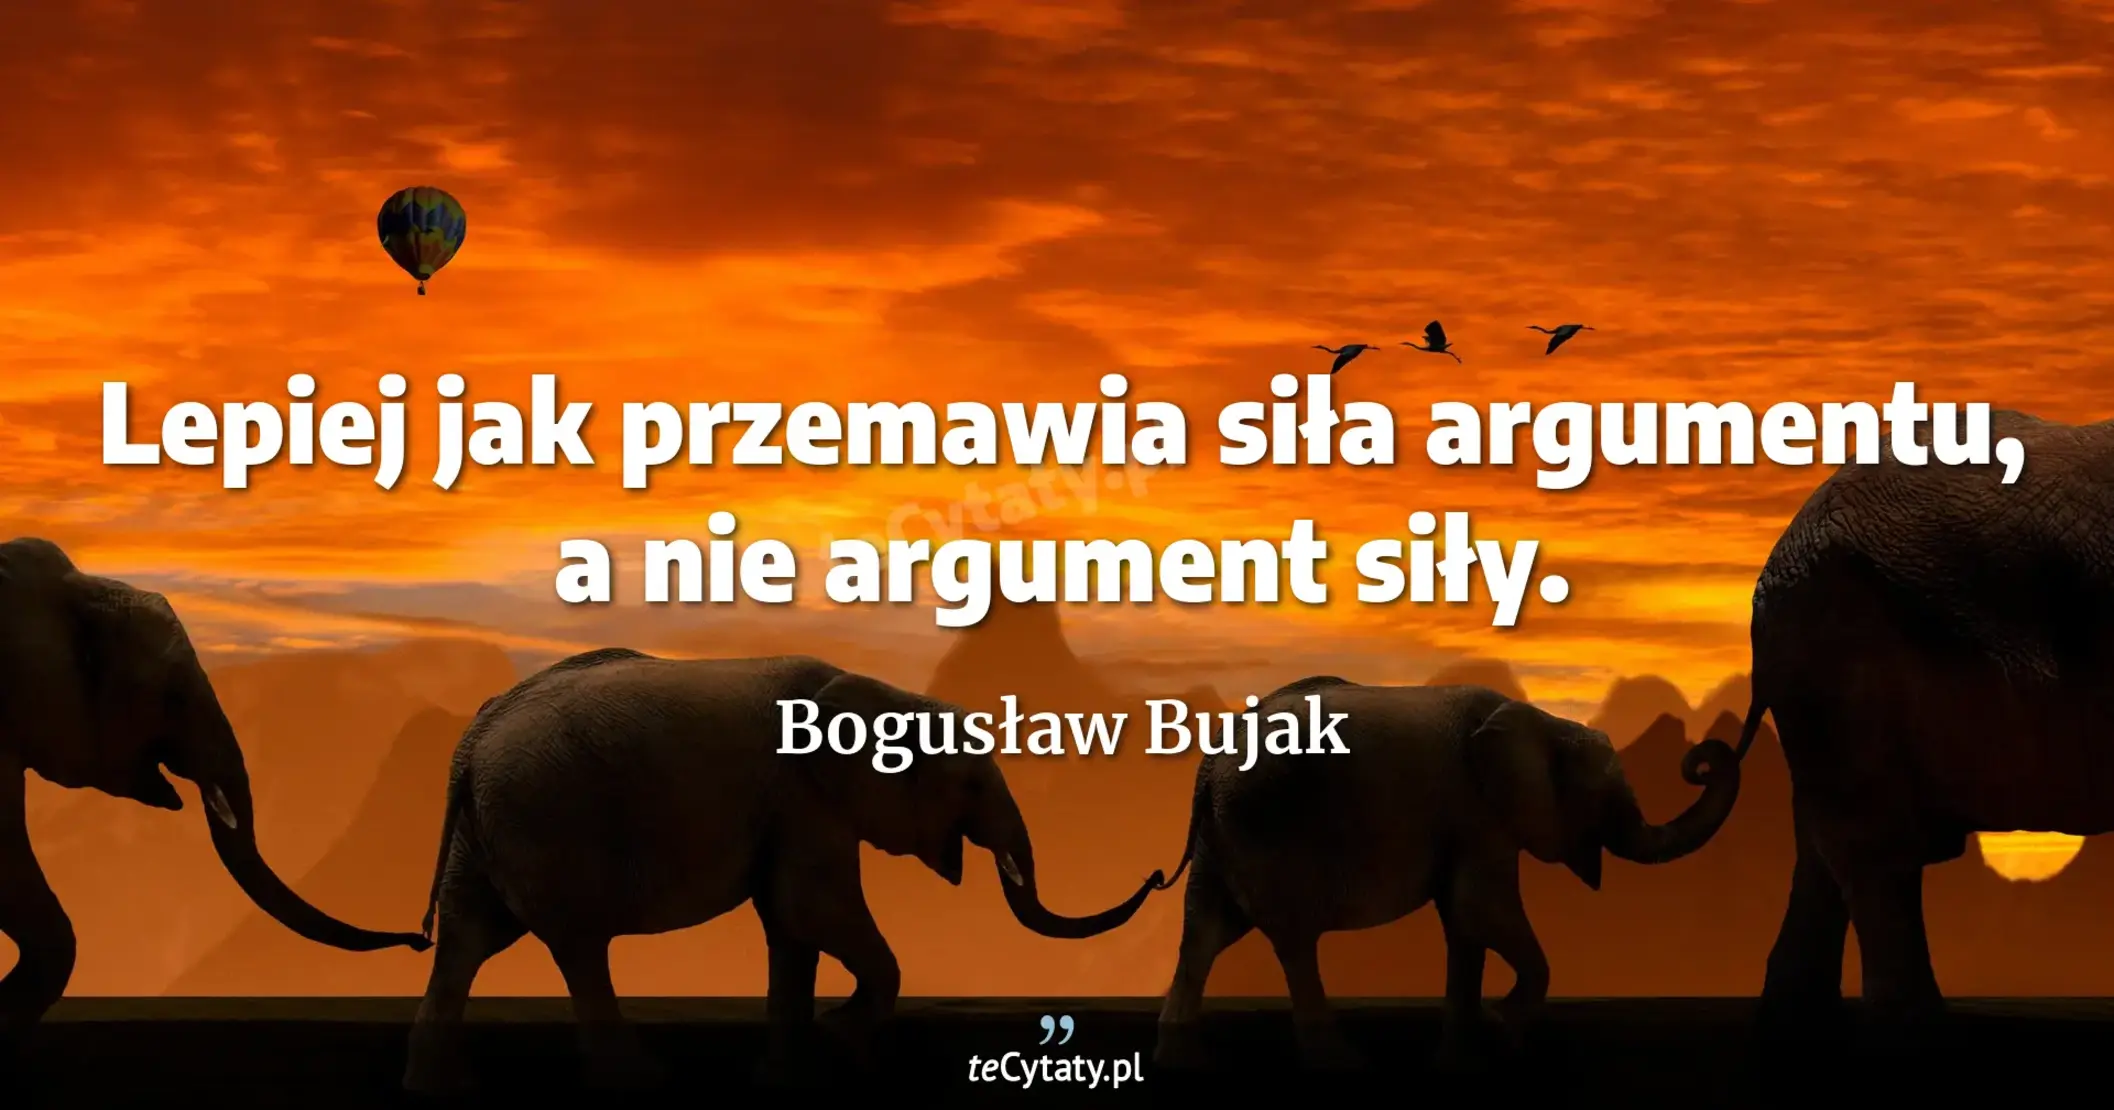 Lepiej jak przemawia siła argumentu, a nie argument siły. - Bogusław Bujak